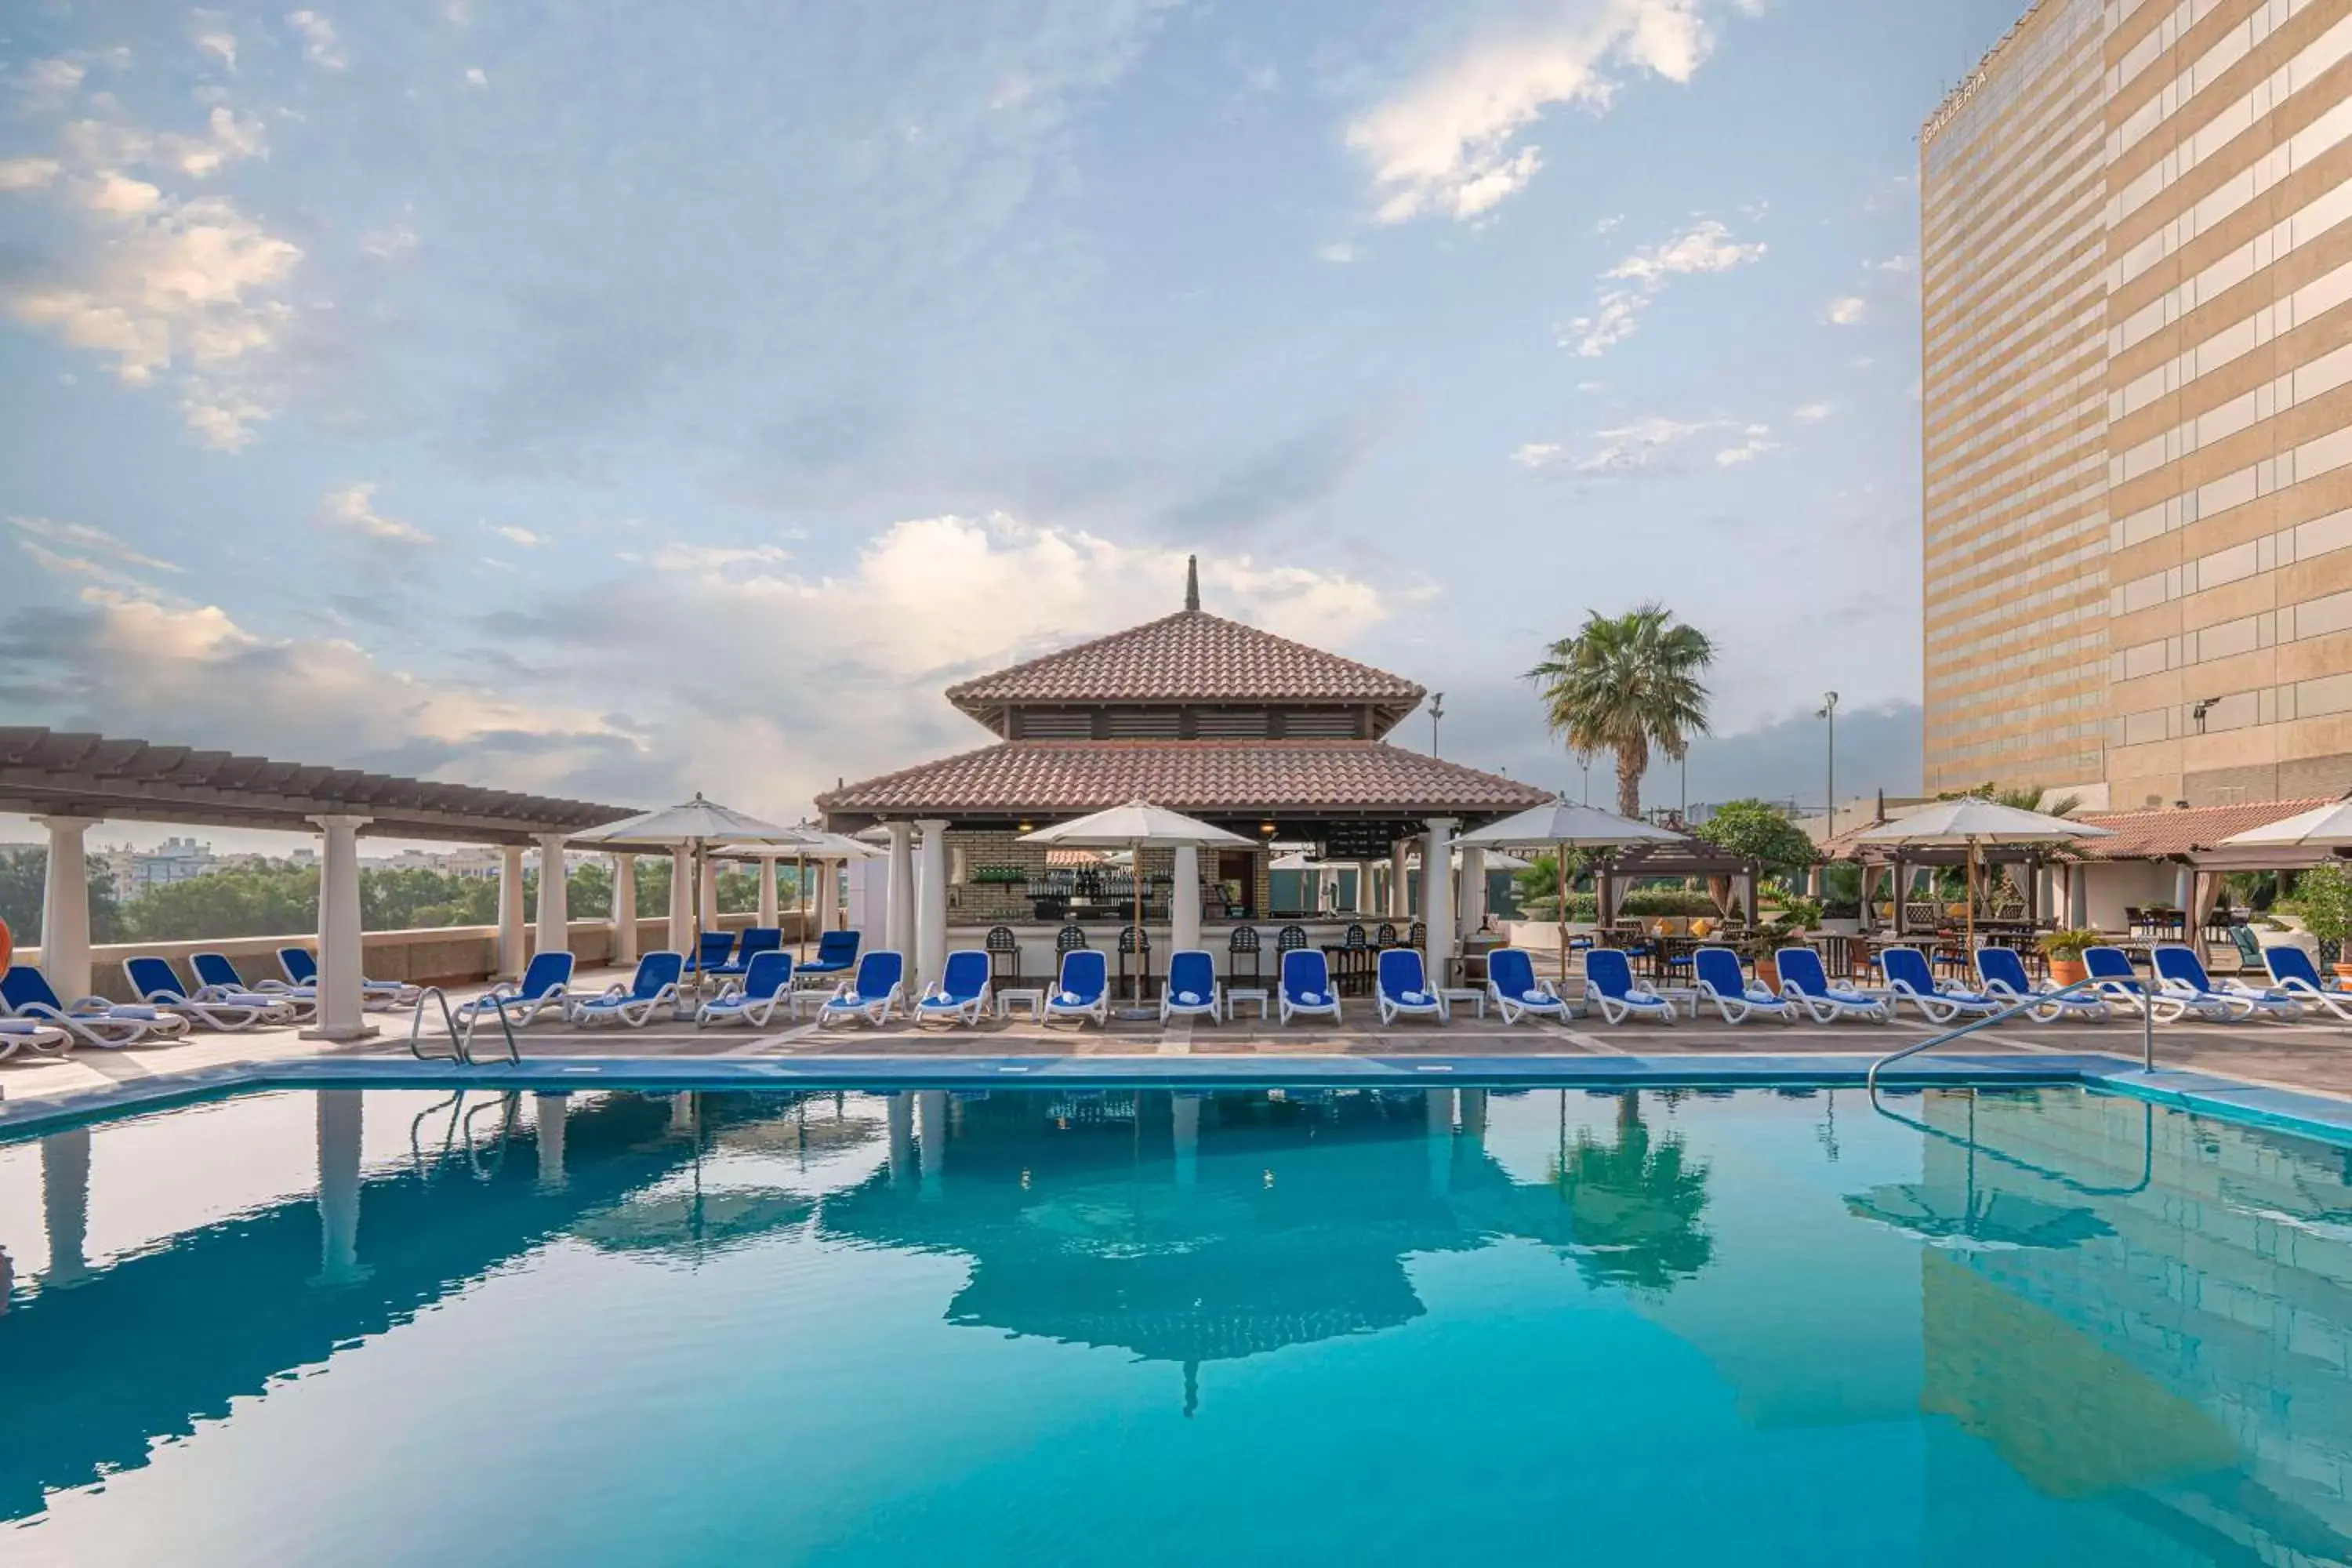 Swimming Pool in Hyatt Regency Dubai - Corniche